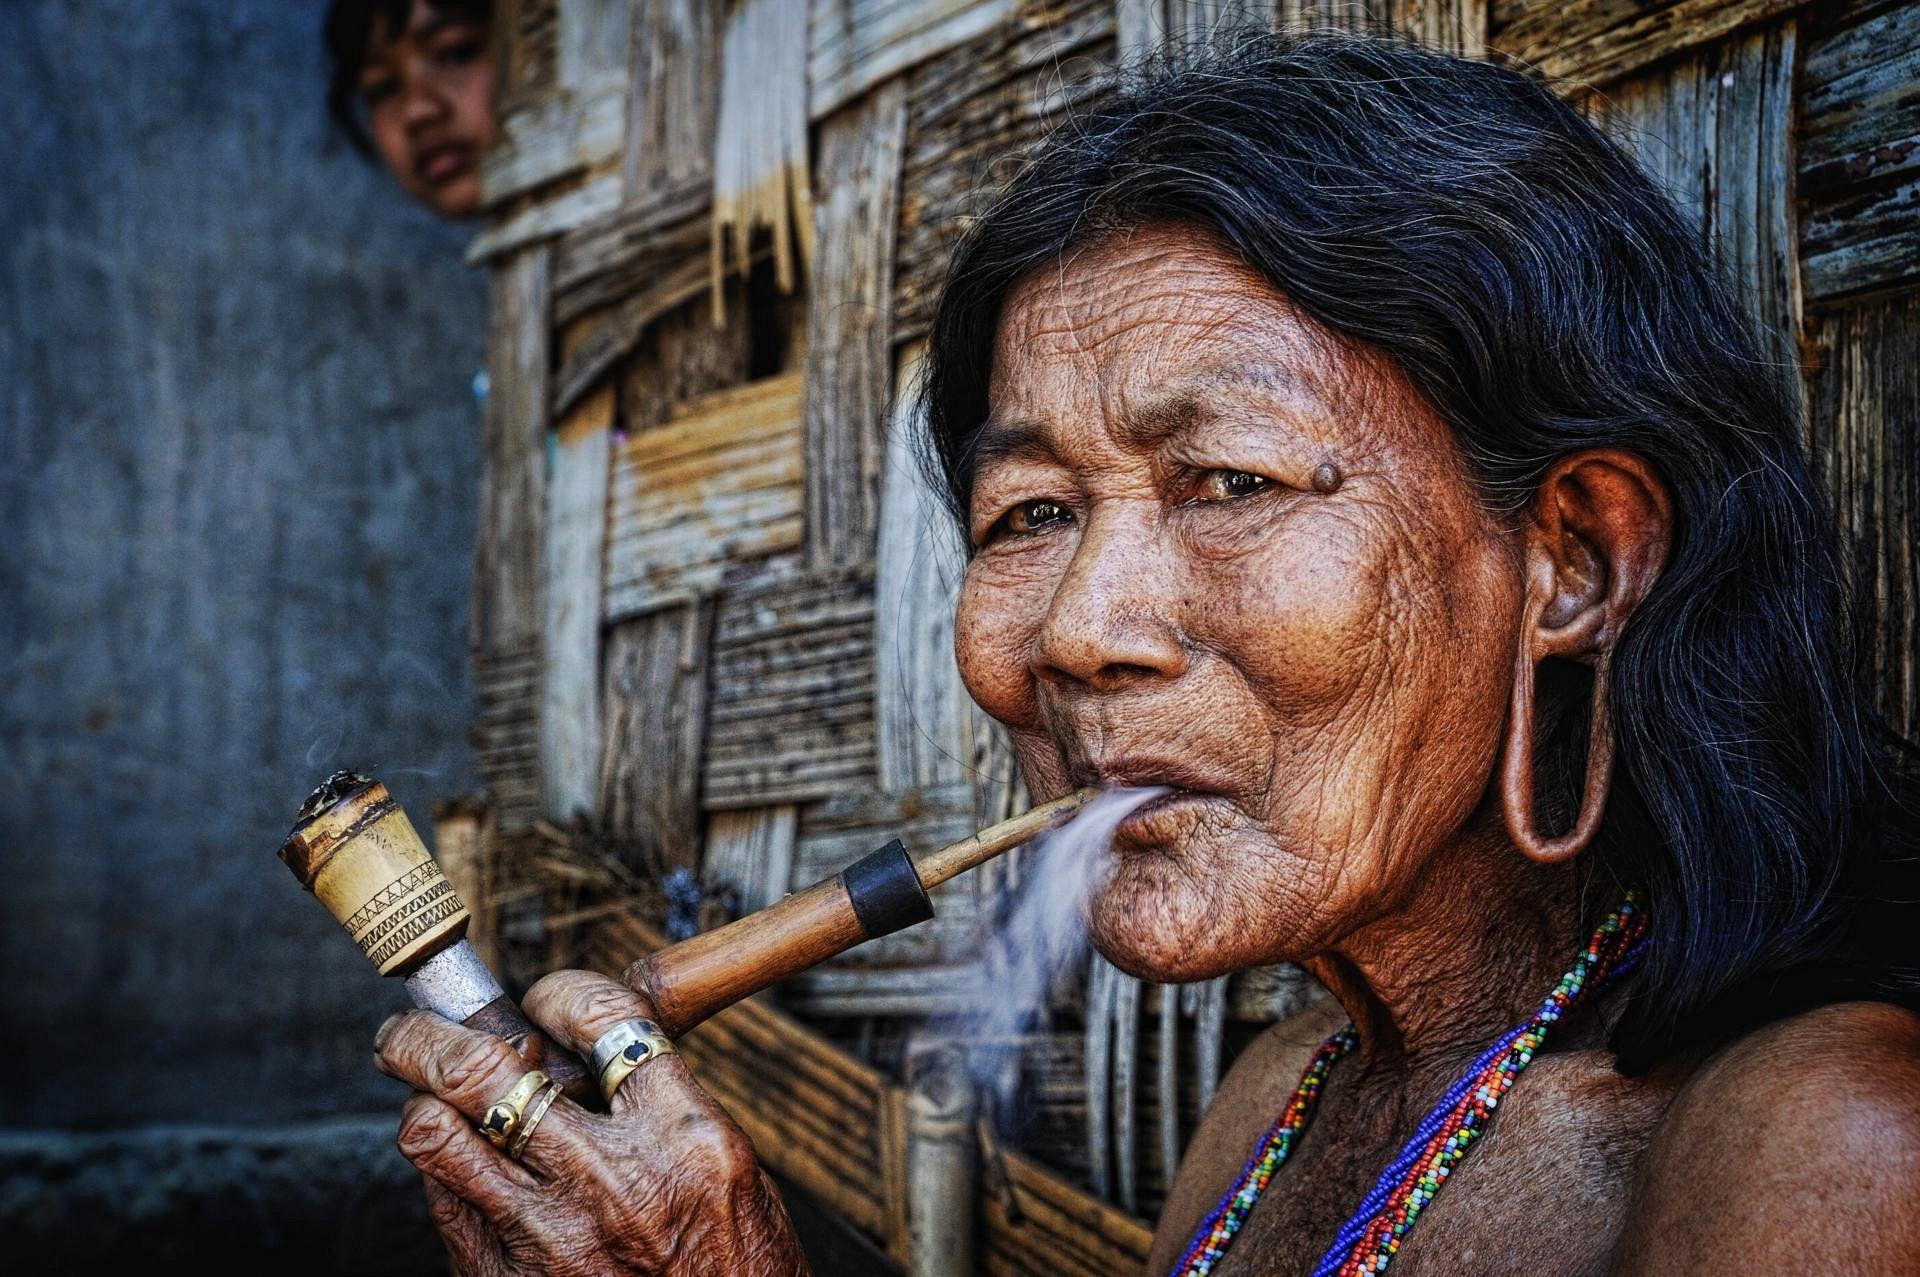 Z Wallpaper Smoking Old Woman x 1277 Men Women